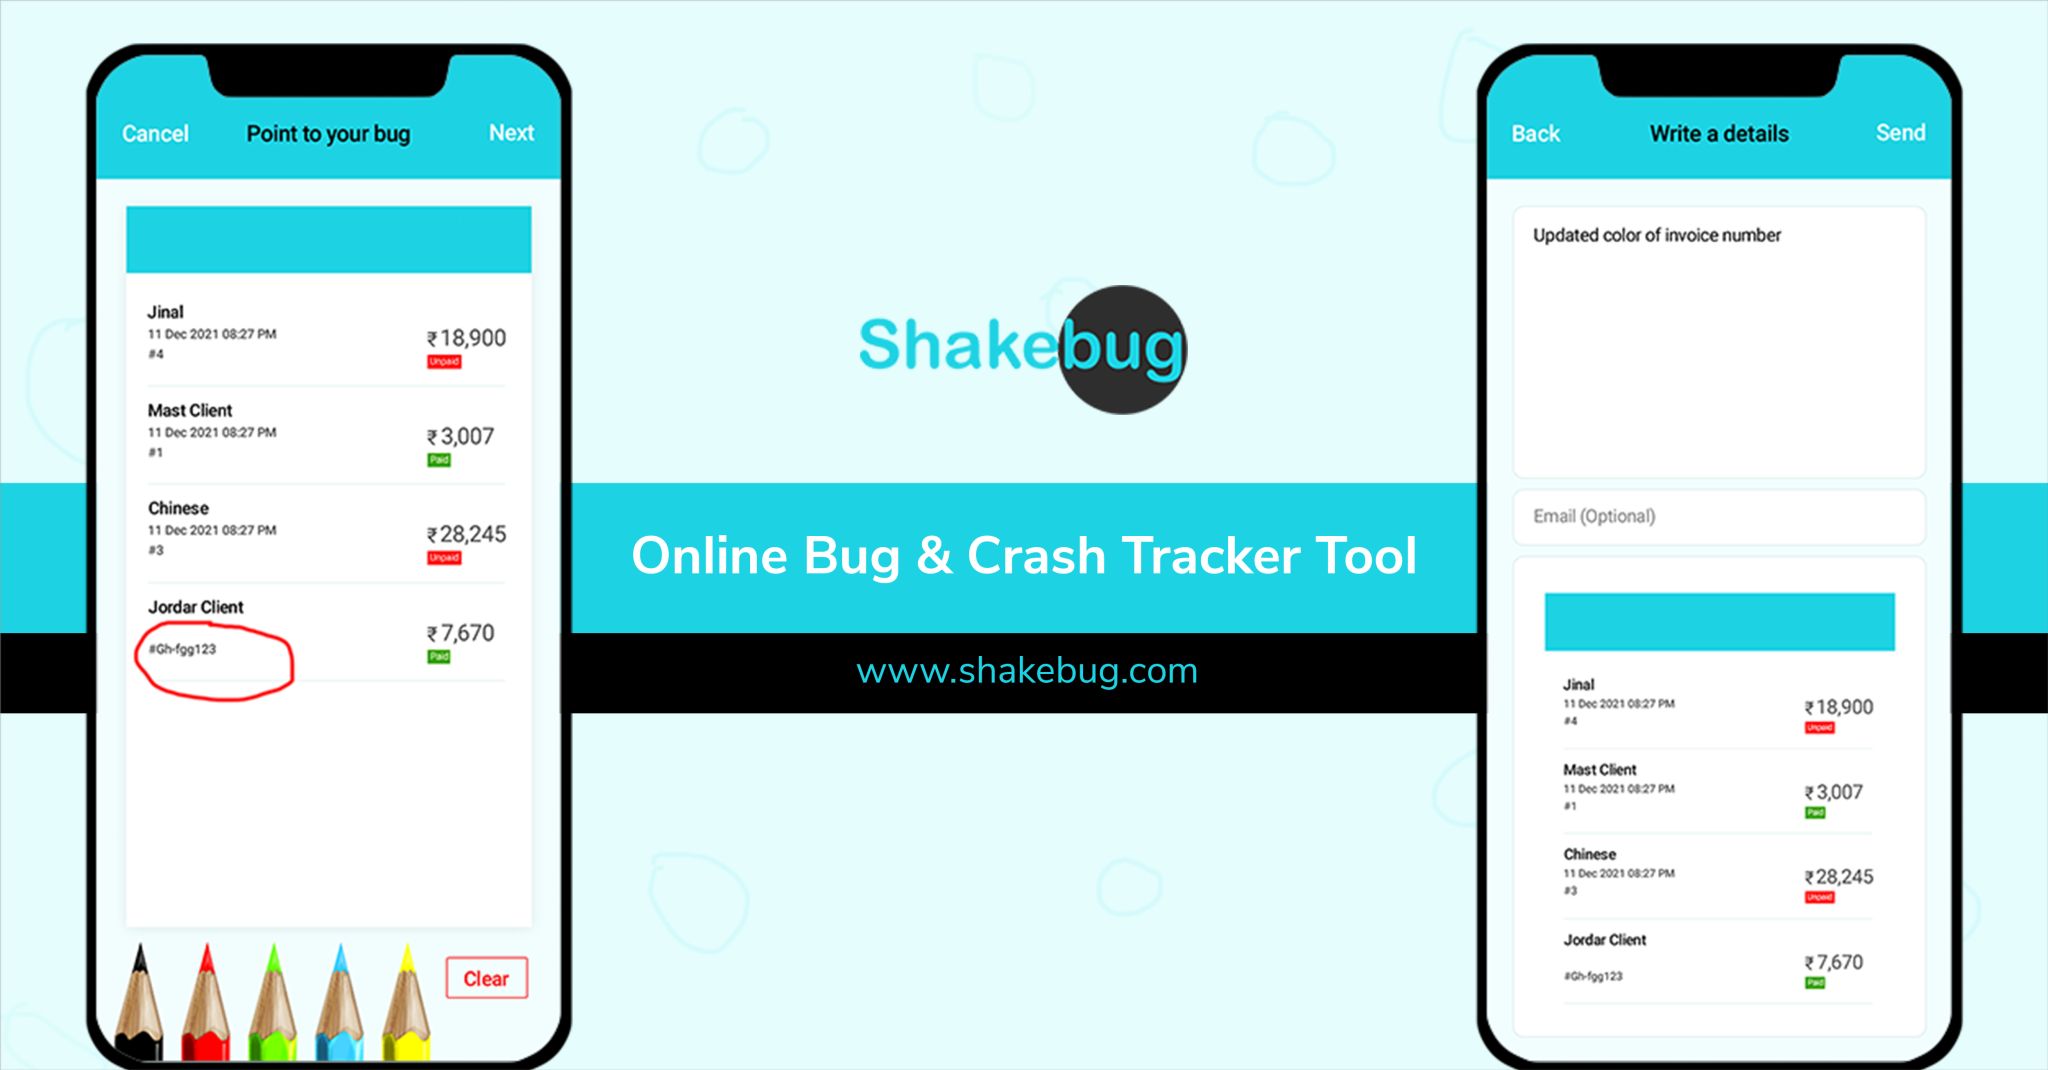 Shakebug Landing page